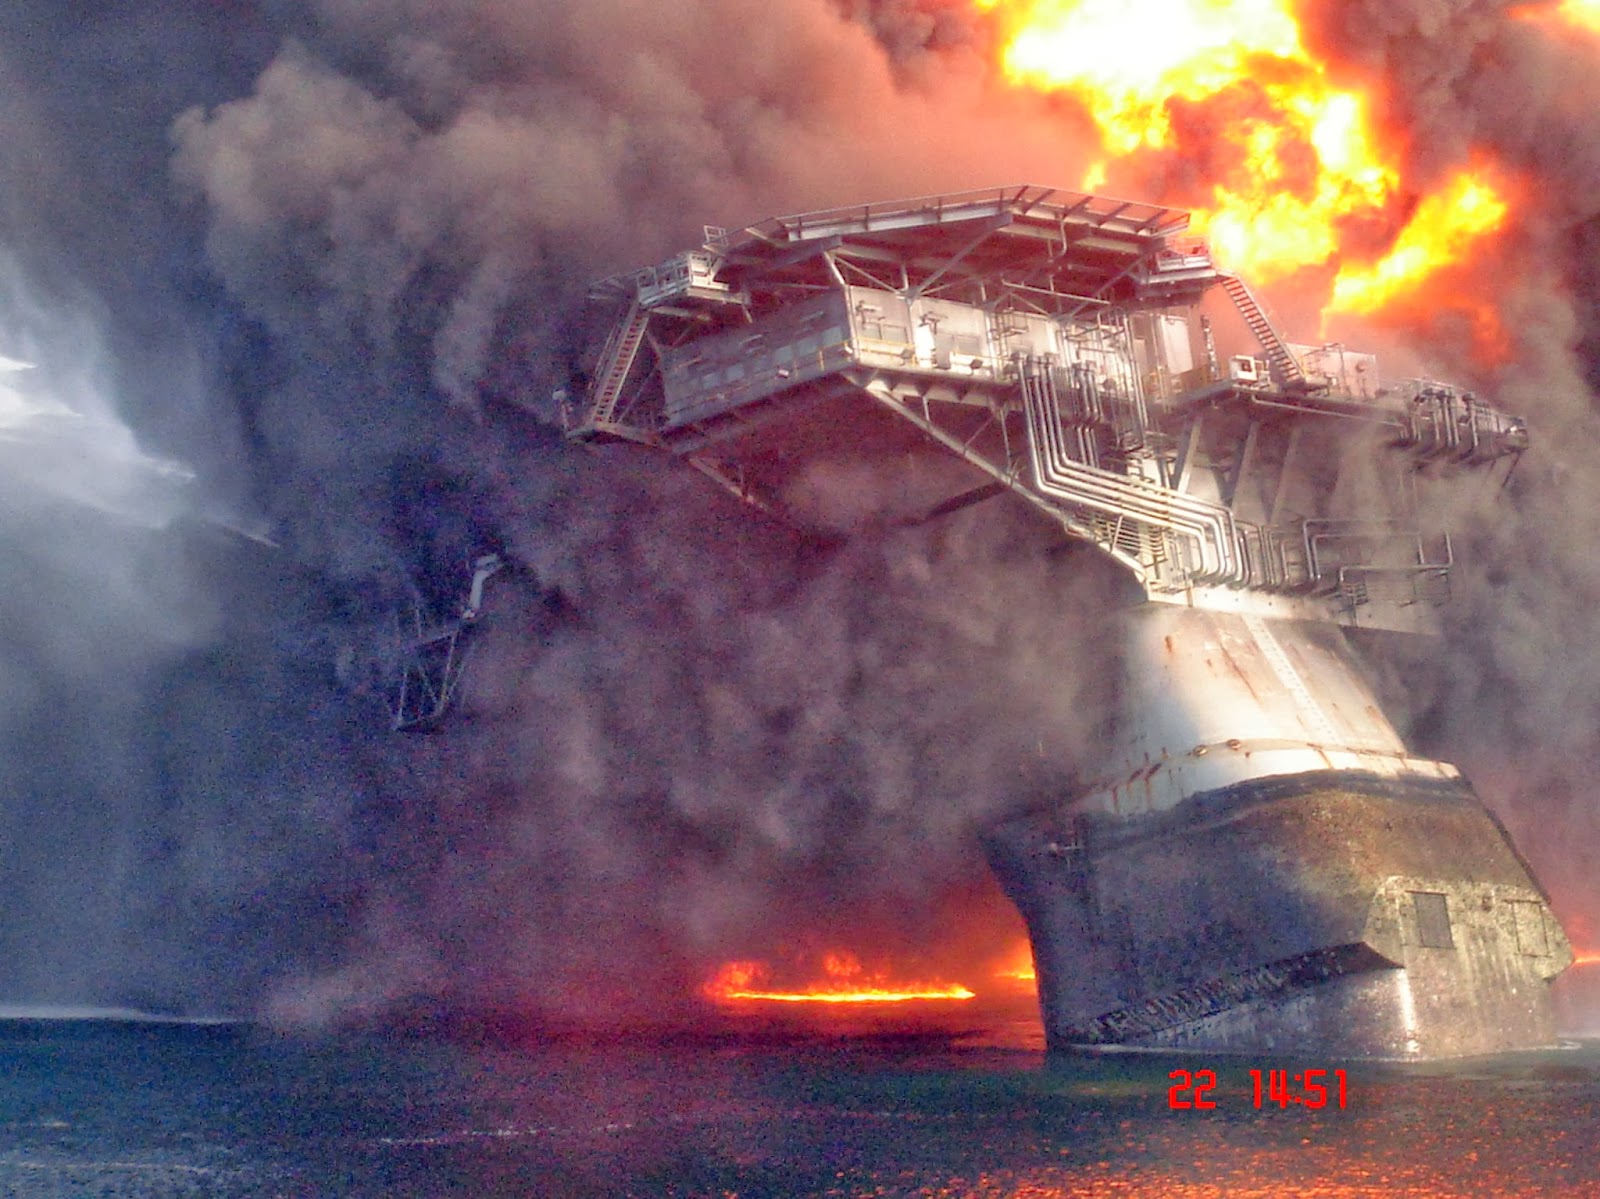 30 апреля 2010. Взрыв на нефтяной платформе в мексиканском заливе 2010. Взрыв платформы Deepwater Horizon. Взрыв нефтяной платформы Deepwater Horizon в мексиканском заливе 2010. Взрыв нефтяной платформы Deepwater Horizon - 20 апреля 2010 года.